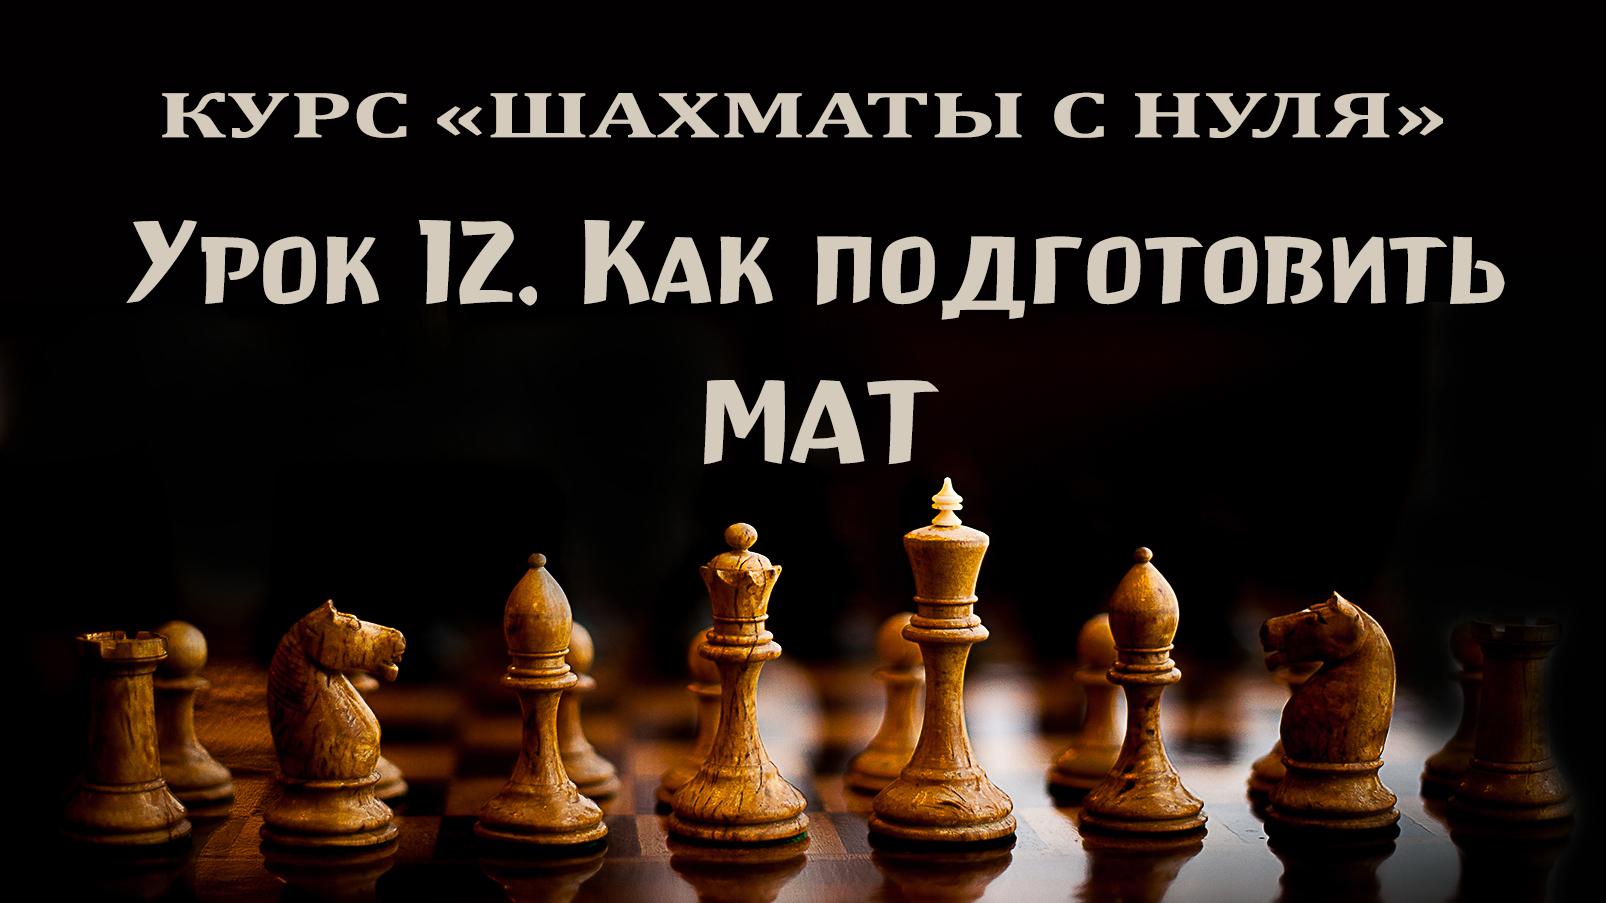 Урок 12. Как подготовить мат. Взаимодействие фигур. Курс для начинающих шахматистов.